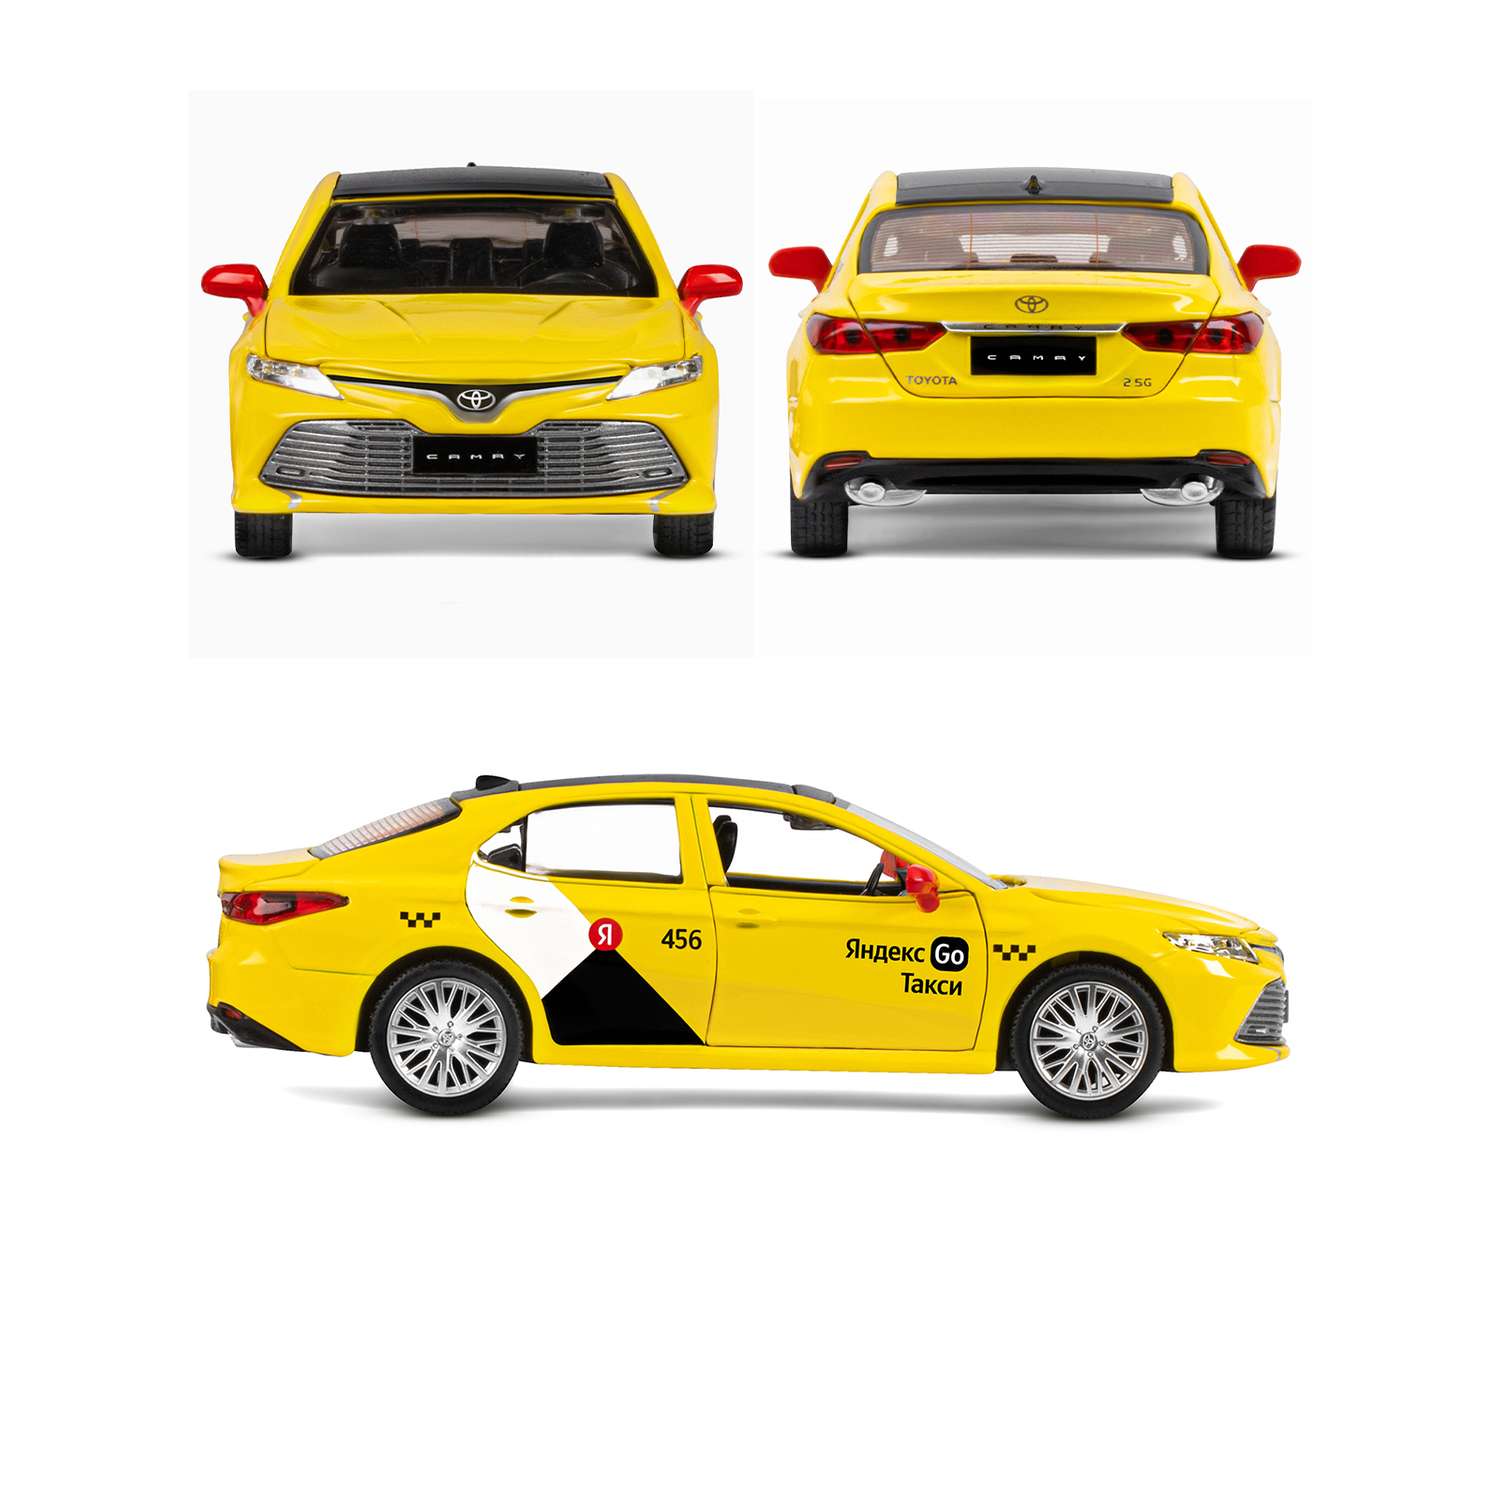 Машинка металлическая Яндекс GO игрушка детская Toyota Camry цвет желтый Озвучено Алисой JB1251482 - фото 6